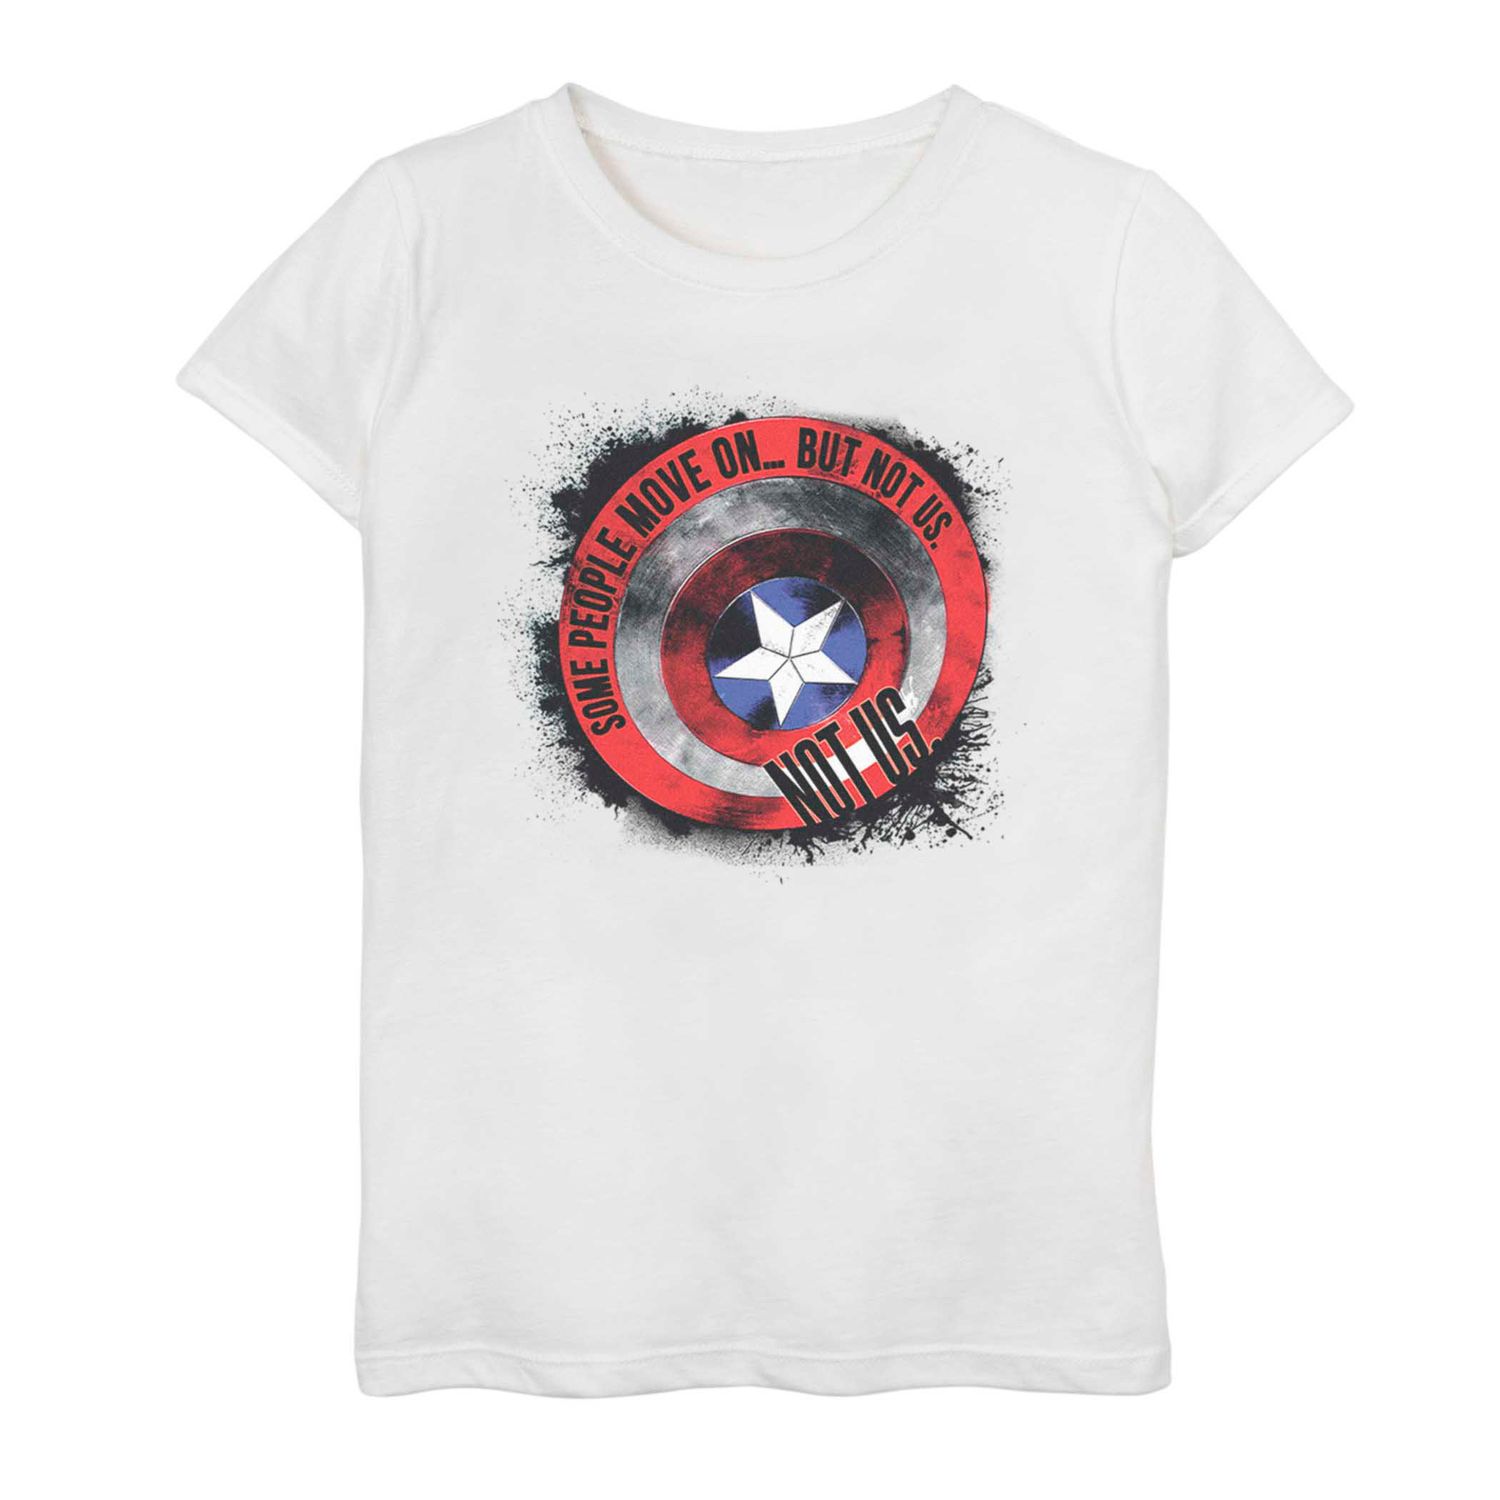 Футболка с надписью «Капитан Америка» для девочек 7–16 лет, «Мстители: Финал», «Капитан Америка» Licensed Character футболка marvel капитан америка с изображением бруклинского щита для девочек 7–16 лет licensed character